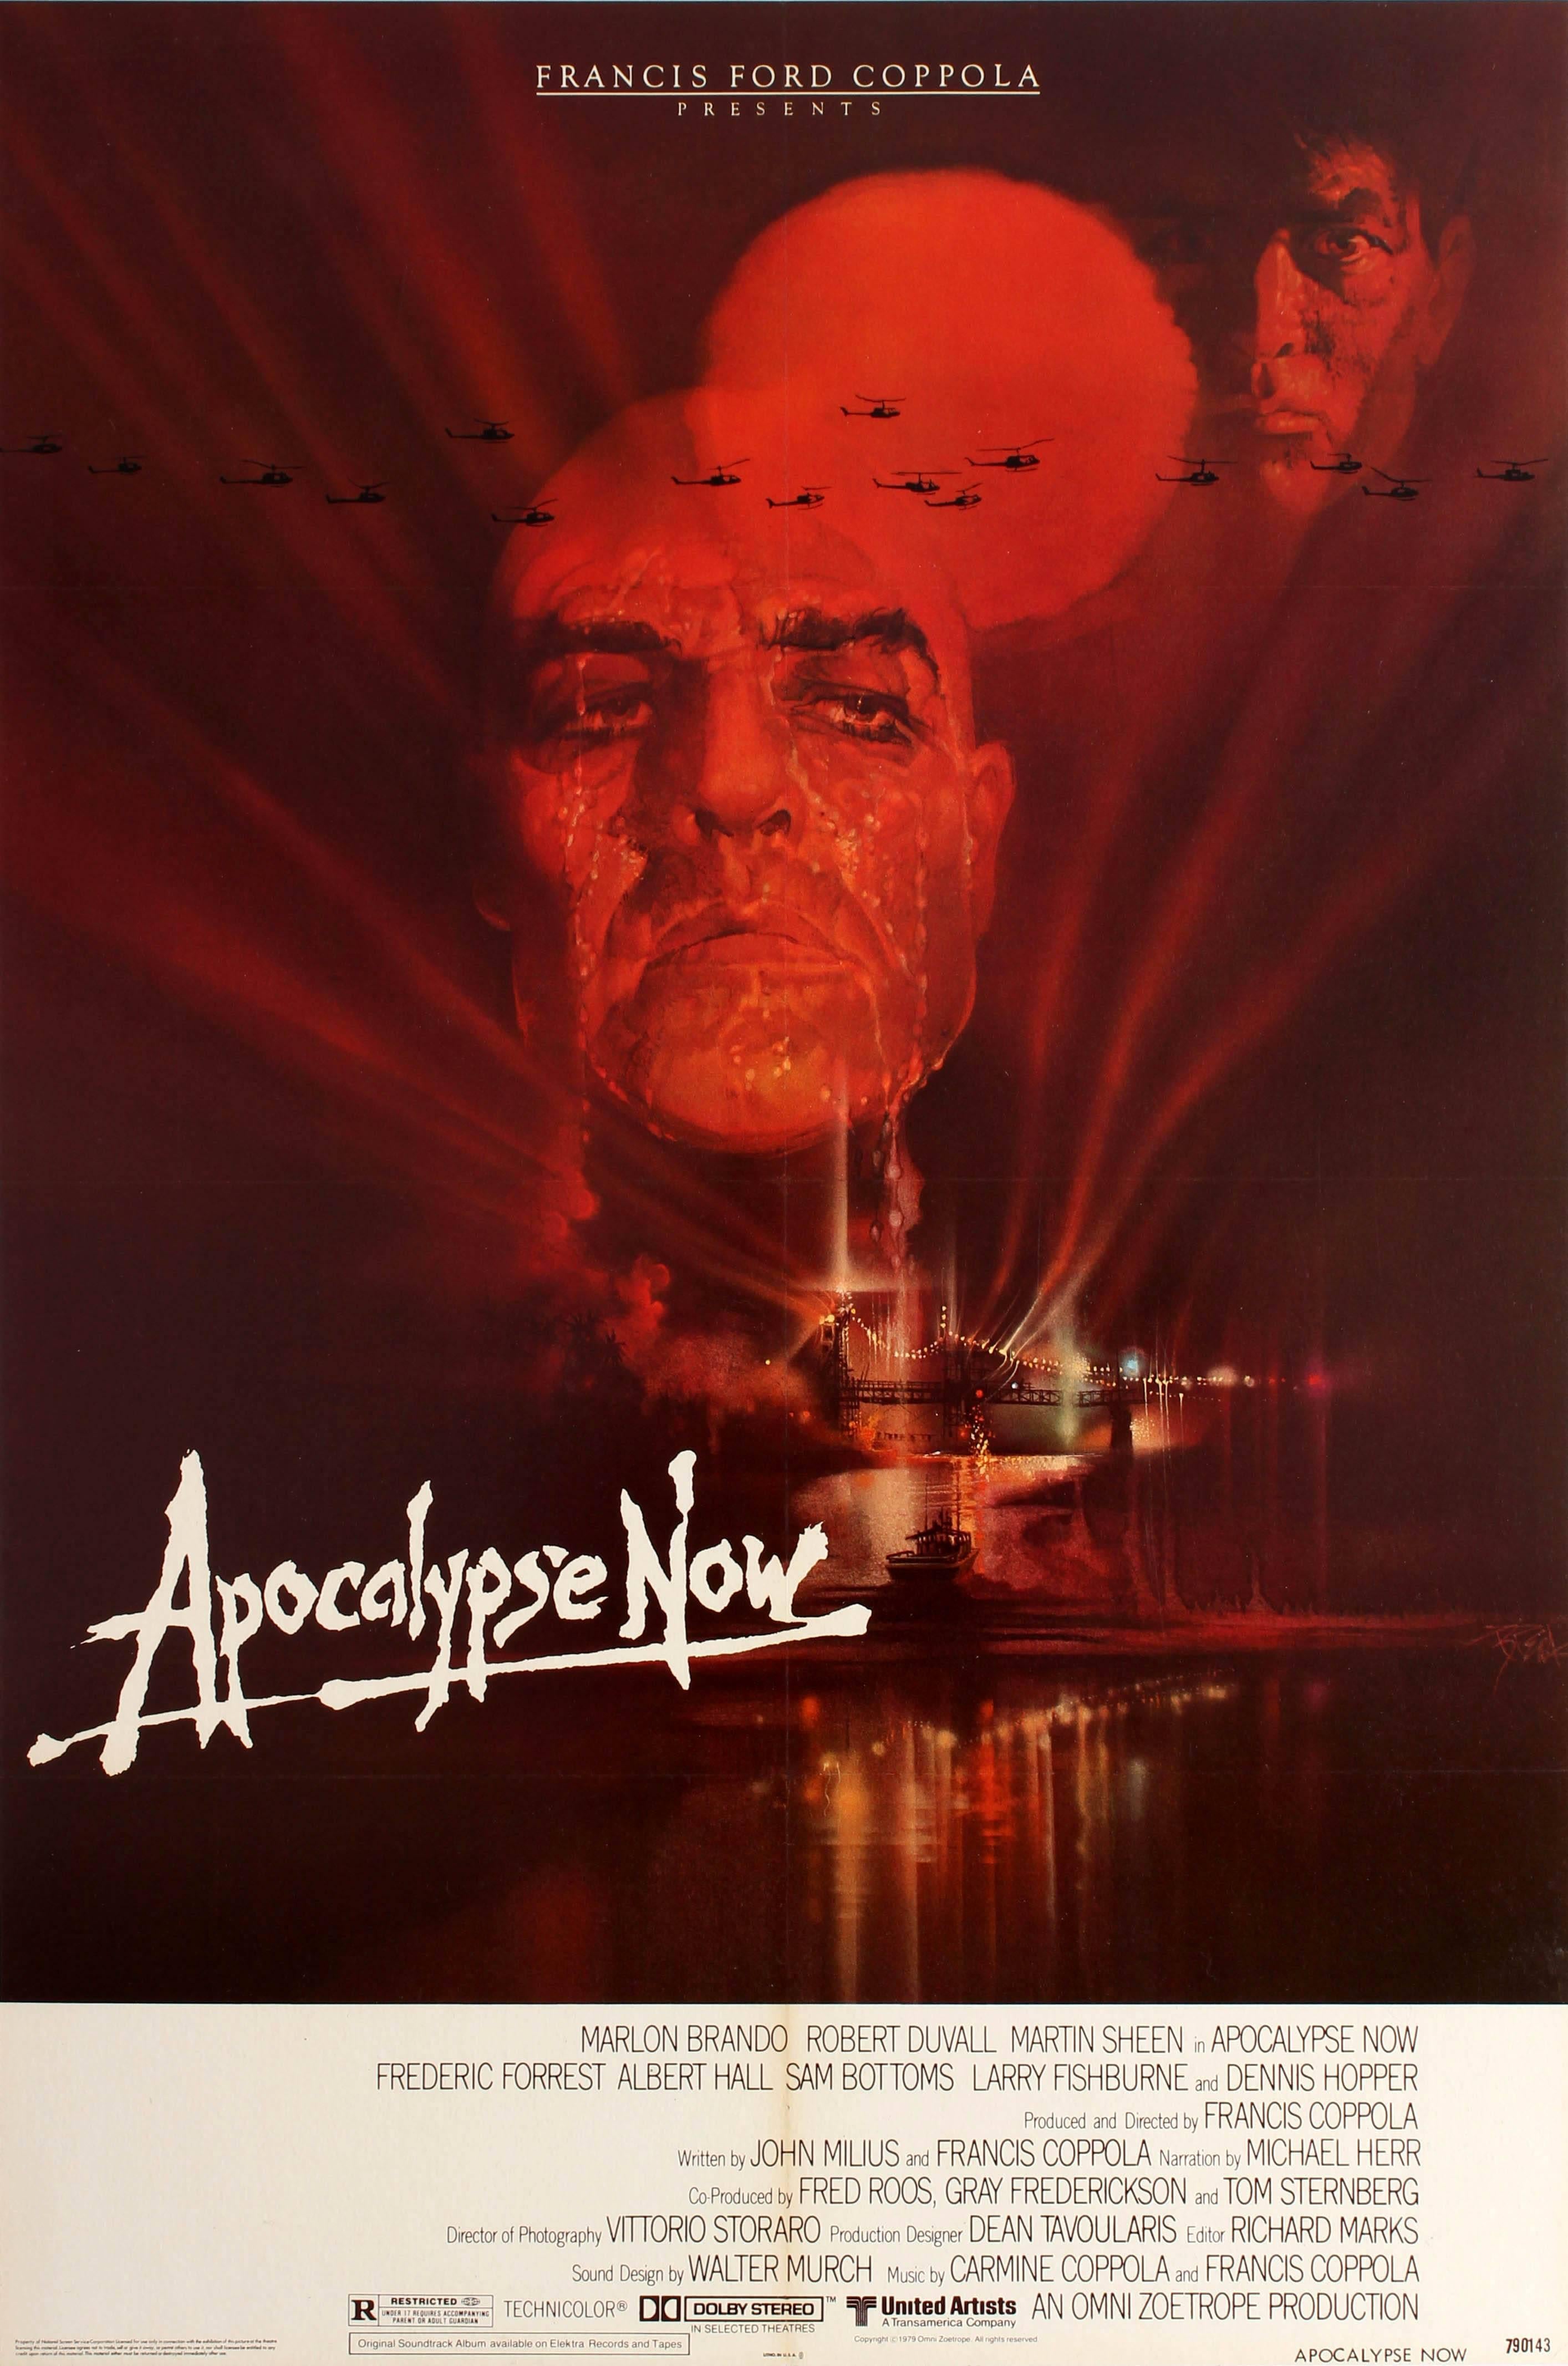 Bob Peak Print - Original Vintage Film Poster For The Francis Ford Coppola Movie Apocalypse Now